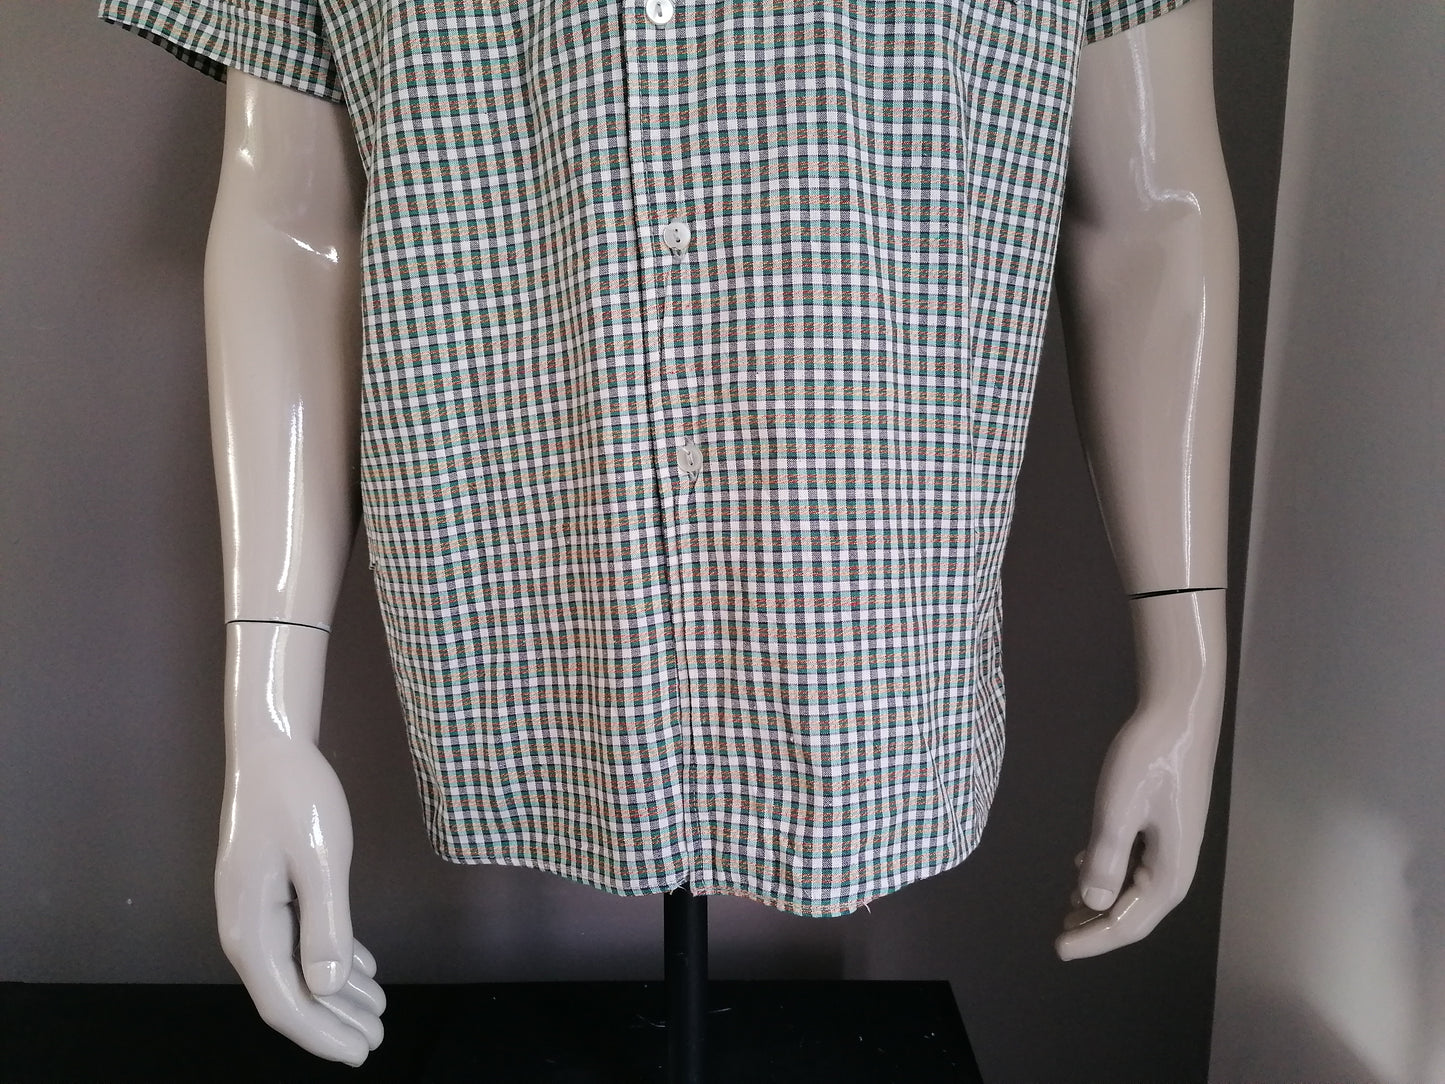 Camisa de manga corta de los años 70 con collar de puntos. Tamaño XL.